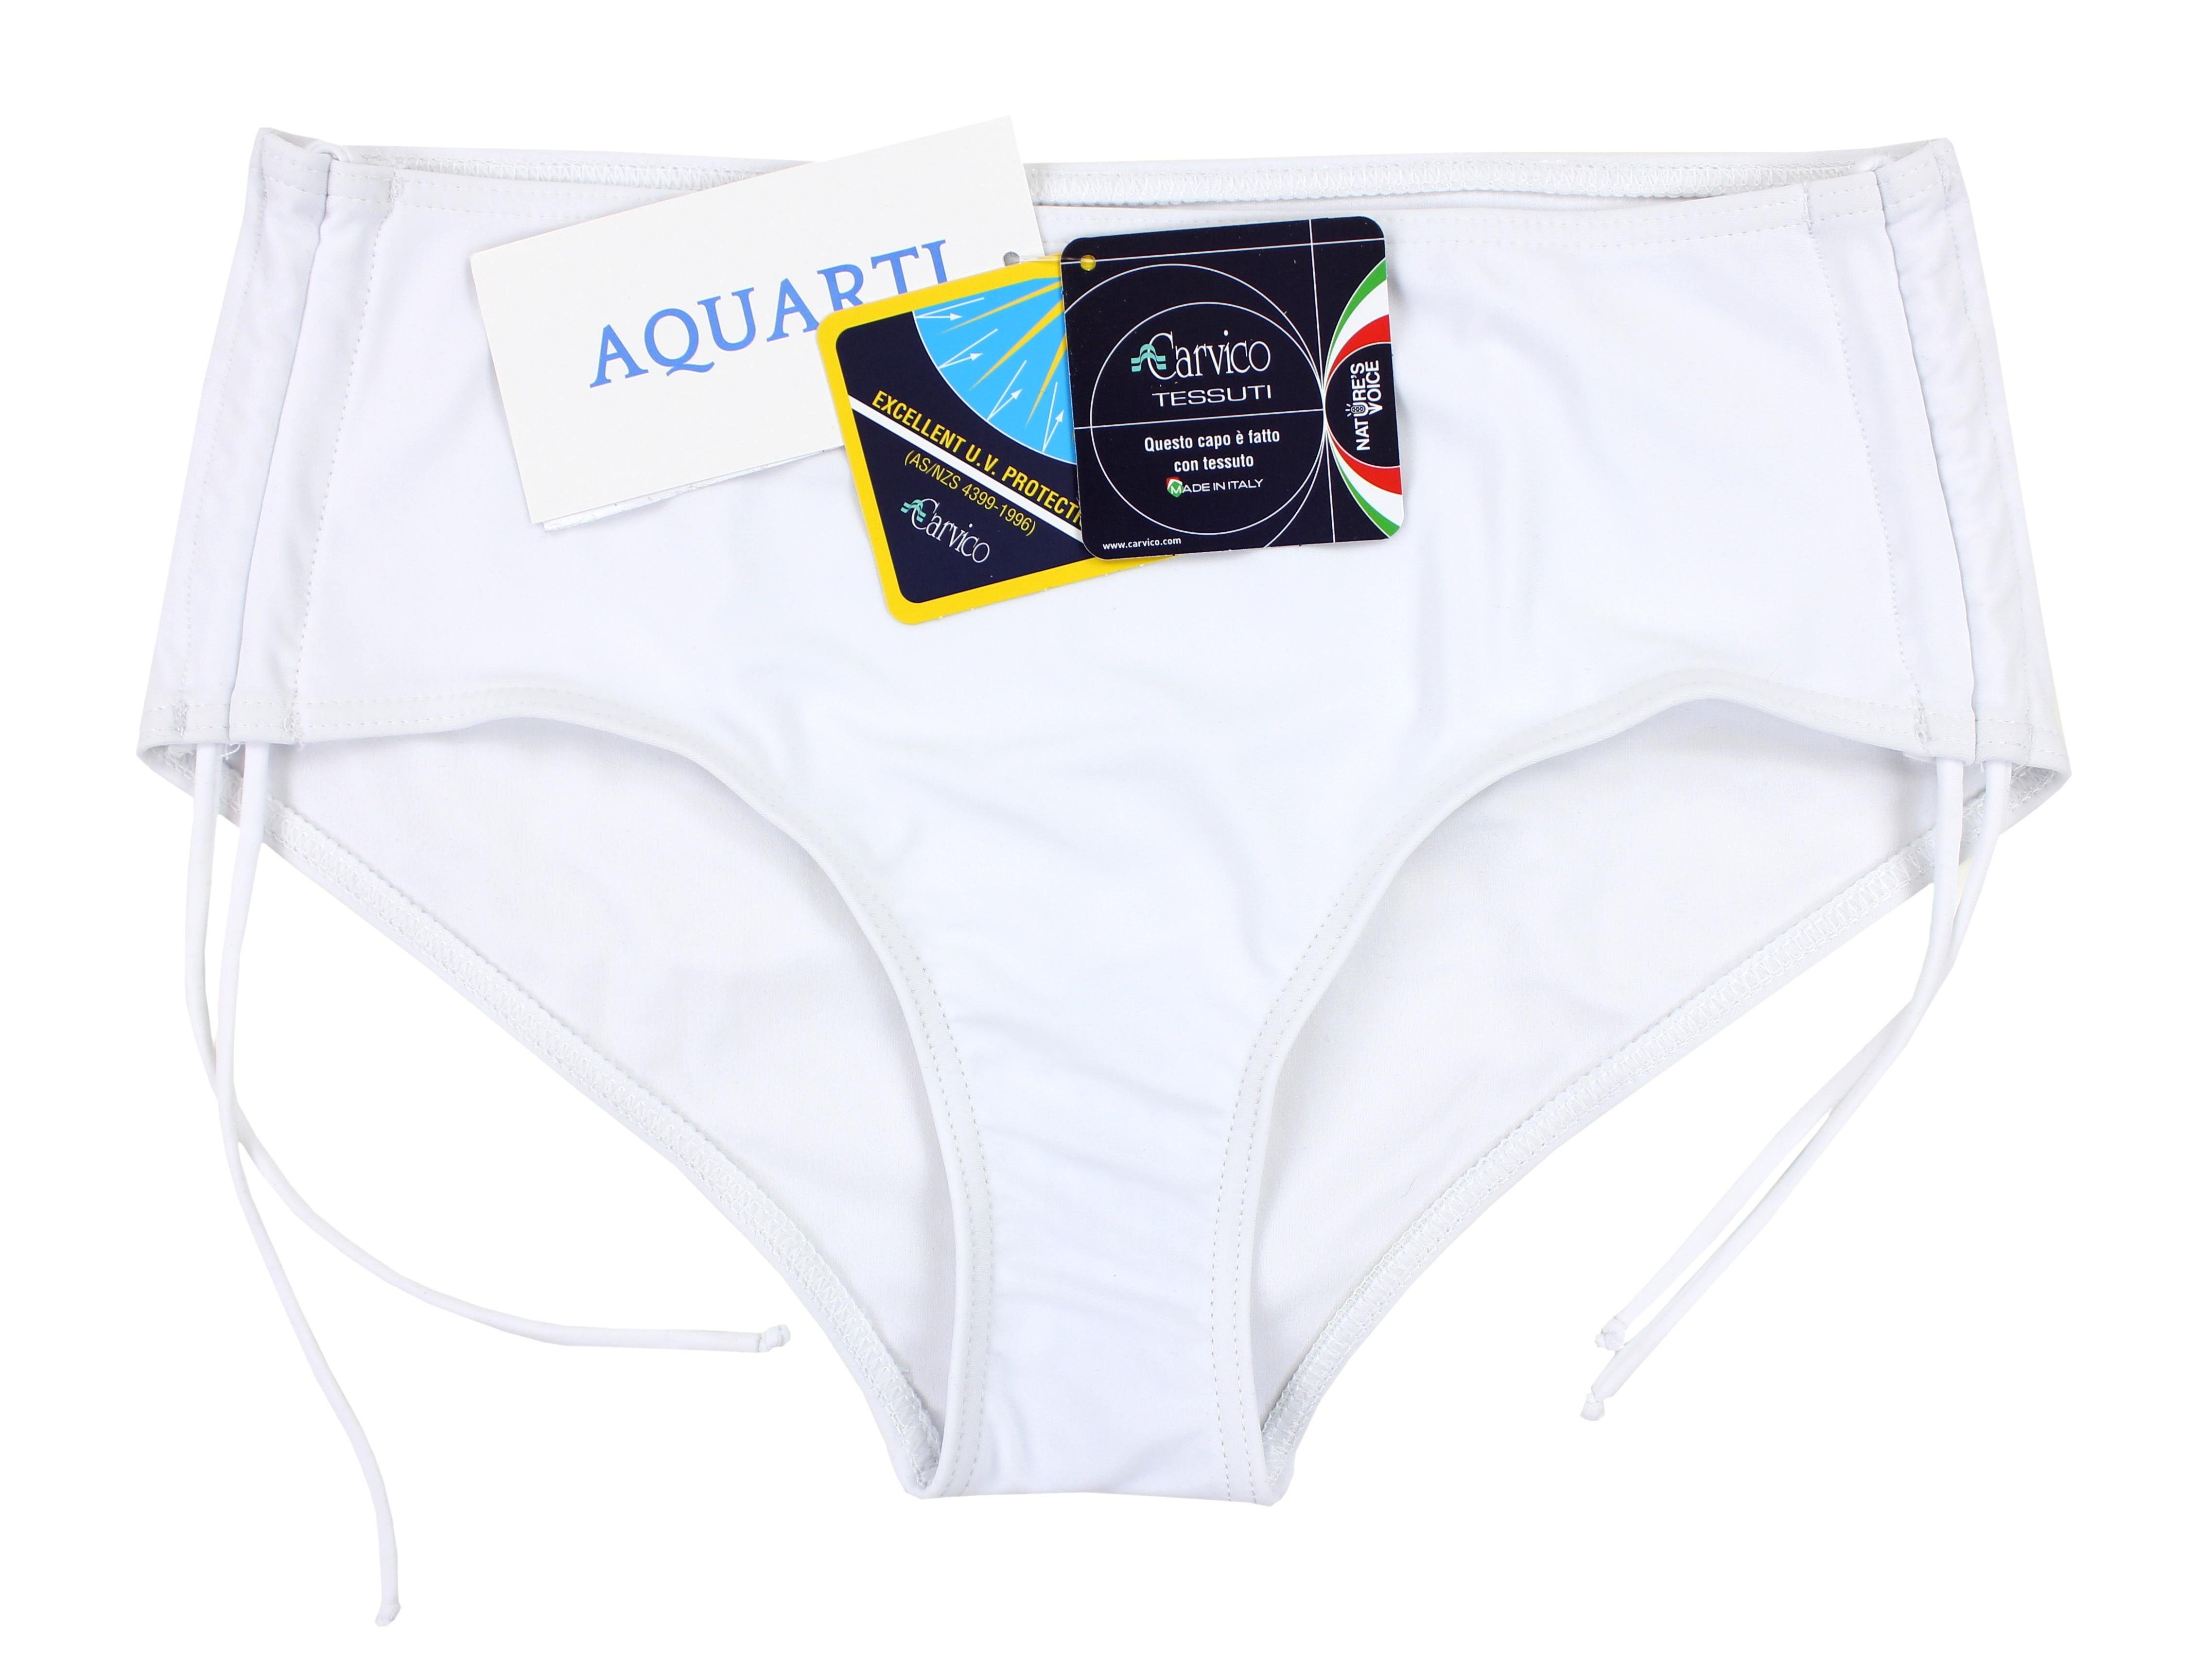 Bikini-Hose Damen und Aquarti Aquarti Schnüren Raffung Weiß mit Bikinihose